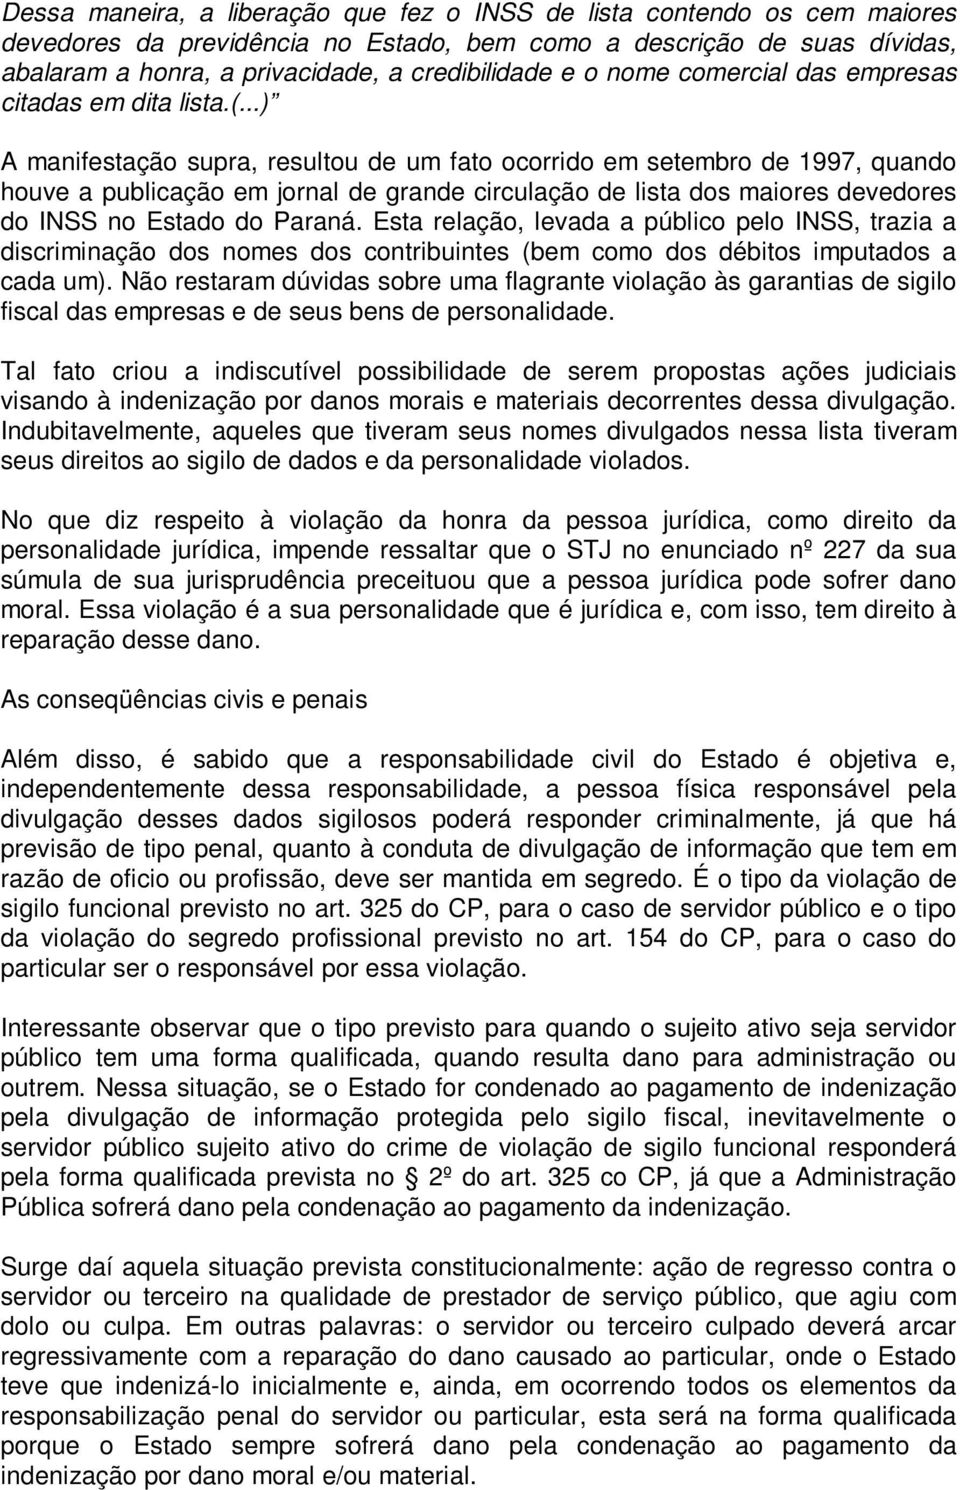 ..) A manifestação supra, resultou de um fato ocorrido em setembro de 1997, quando houve a publicação em jornal de grande circulação de lista dos maiores devedores do INSS no Estado do Paraná.